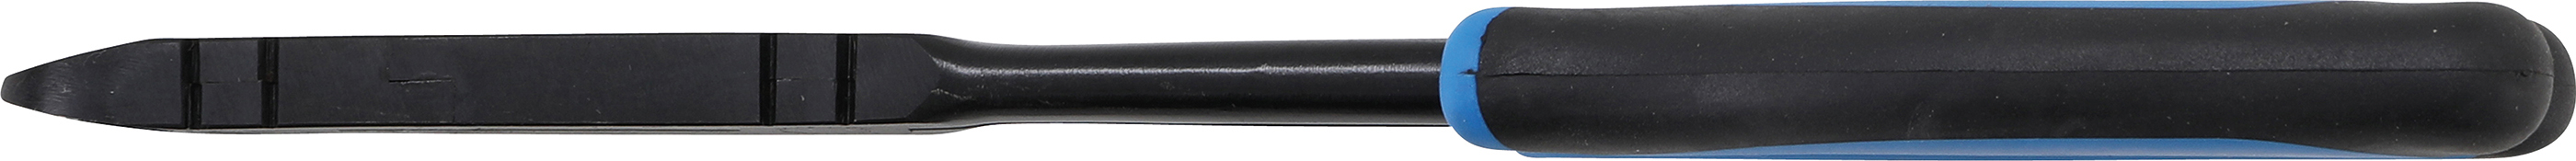 BGS Doppelgelenk-Seitenschneider | 295 mm